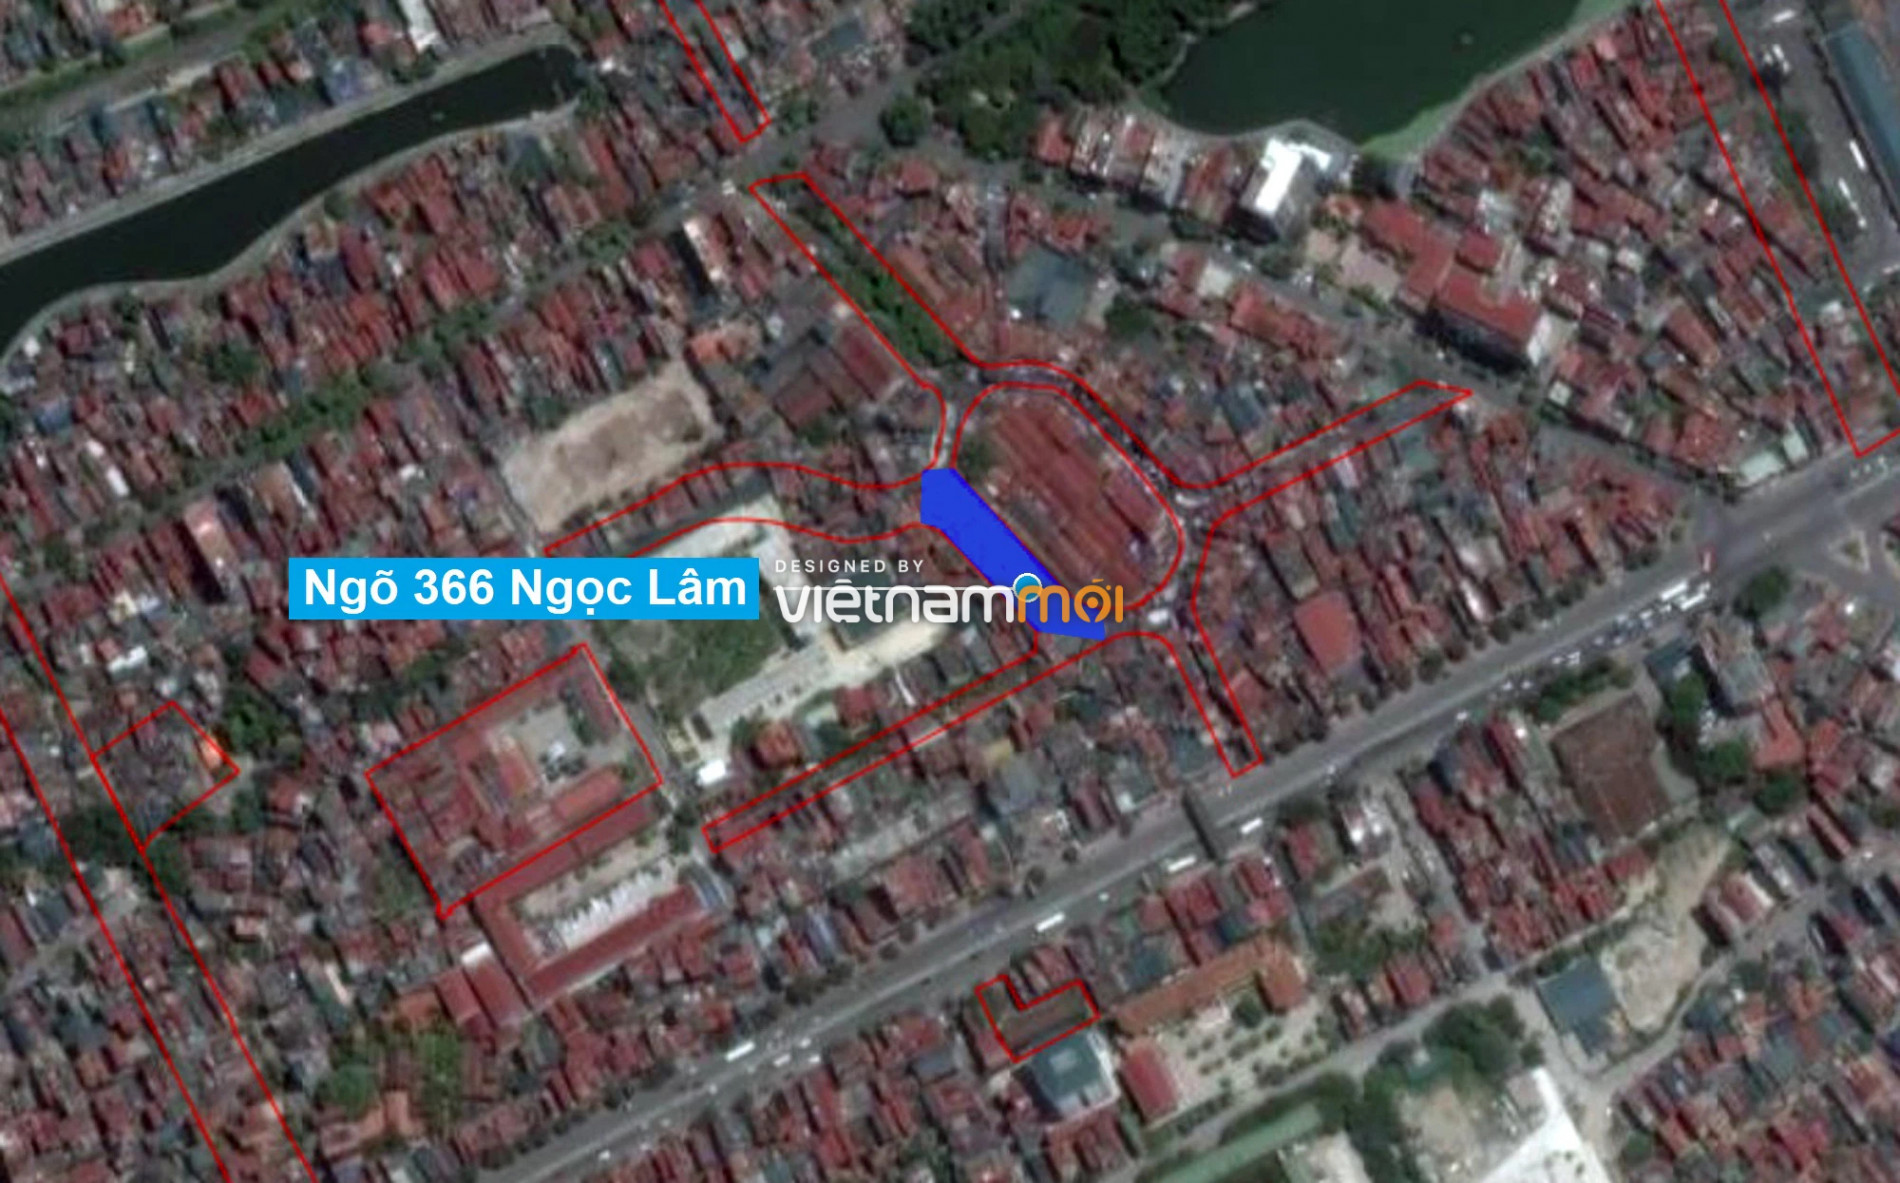 Những khu đất sắp thu hồi để mở đường ở phường Ngọc Lâm, Long Biên, Hà Nội (phần 2) - Ảnh 15.